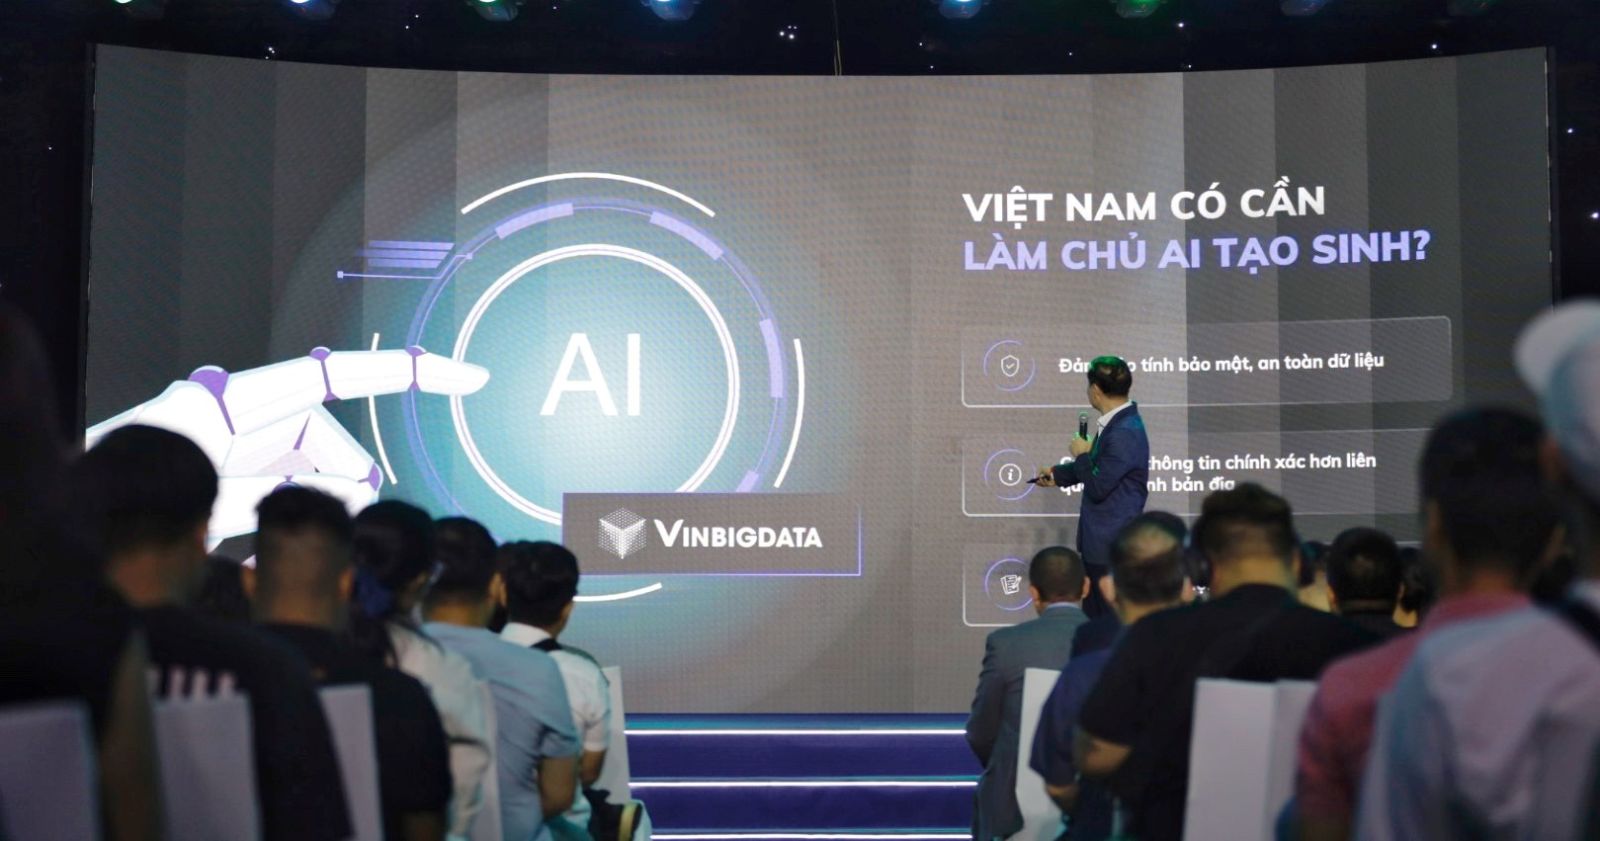 Tháng 12/2023, VinBigdata sẽ chính thức ra mắt VinBase 2.0 tích hợp AI tạo sinh và ứng dụng ViGPT - “ChatGPT phiên bản Việt”